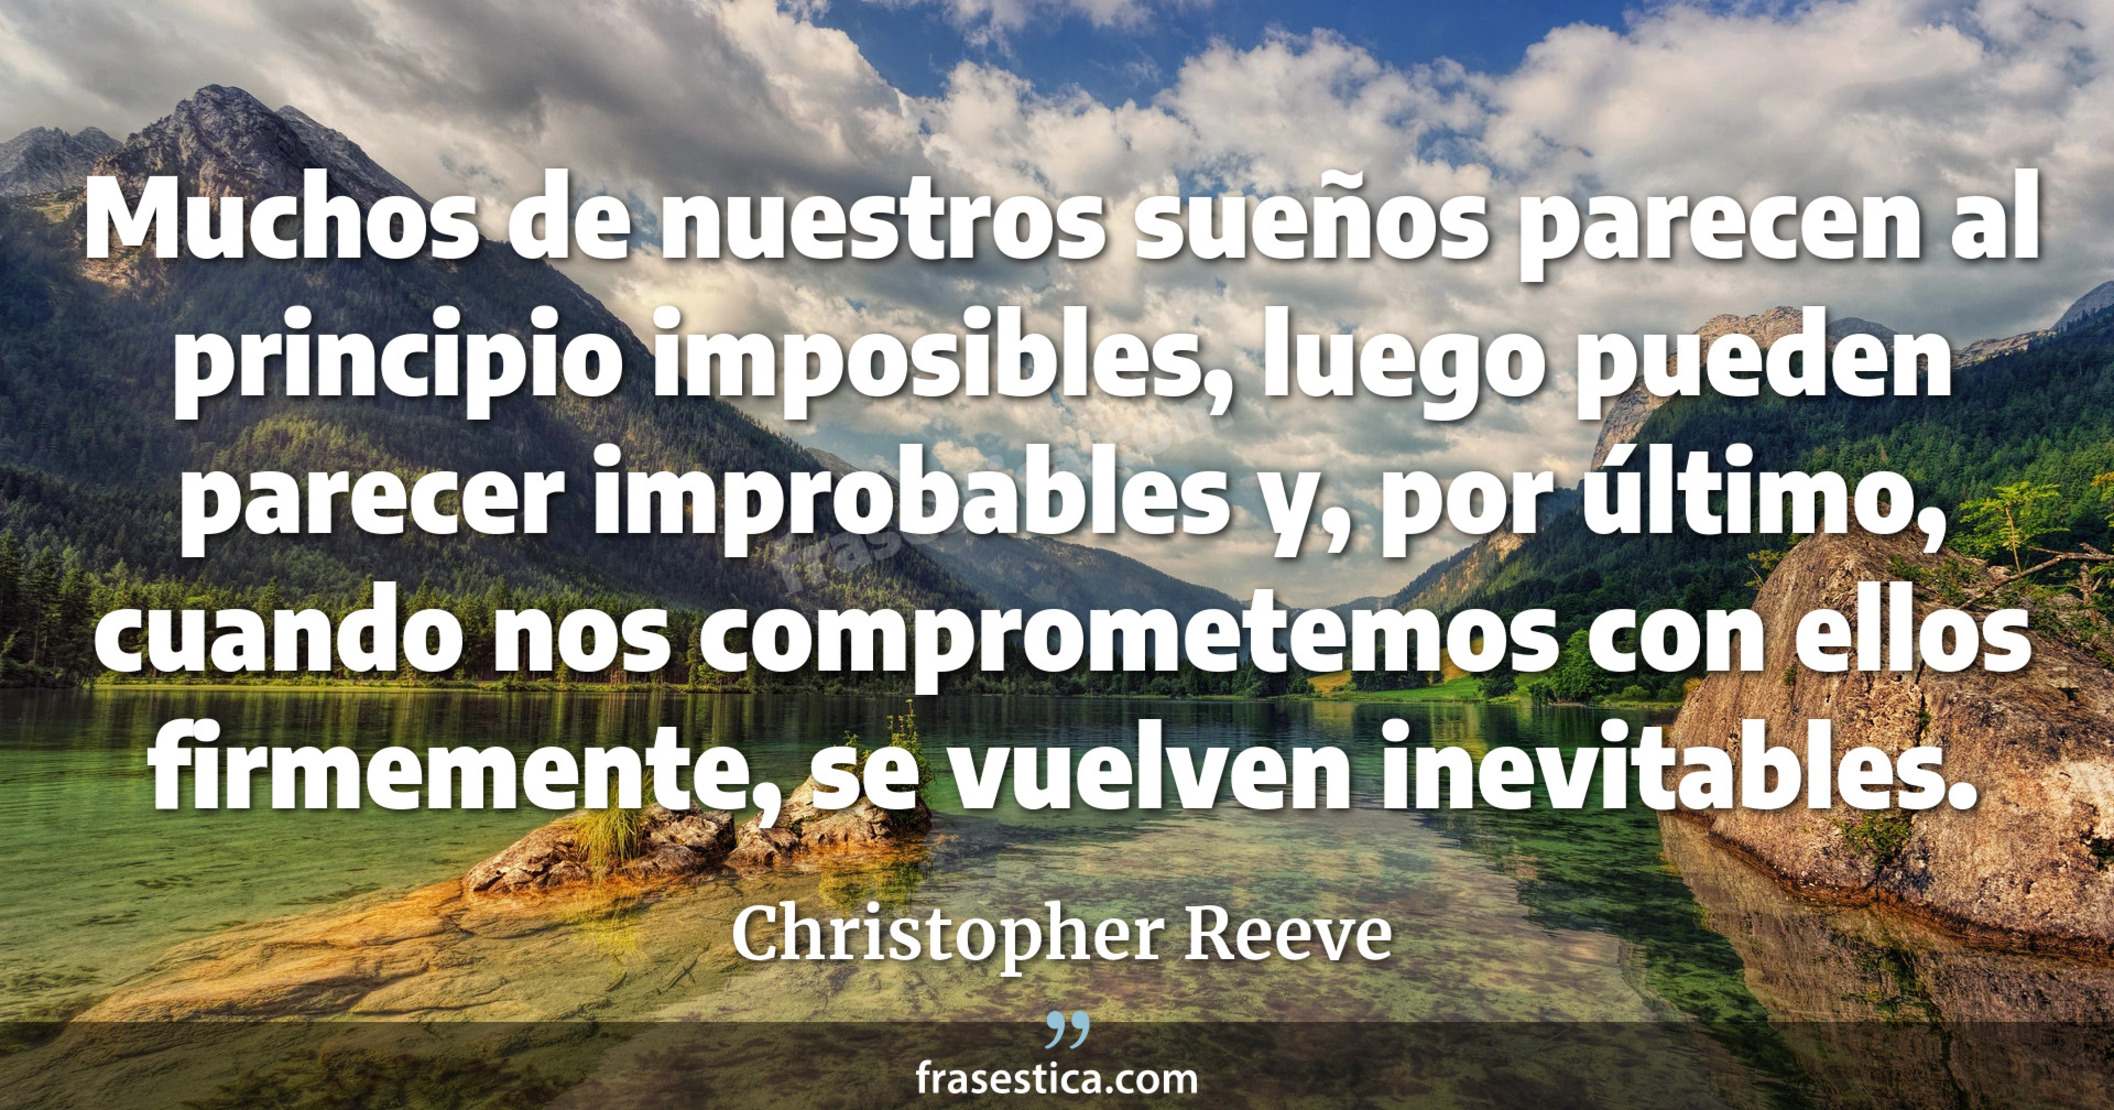 Muchos de nuestros sueños parecen al principio imposibles, luego pueden parecer improbables y, por último, cuando nos comprometemos con ellos firmemente, se vuelven inevitables. - Christopher Reeve